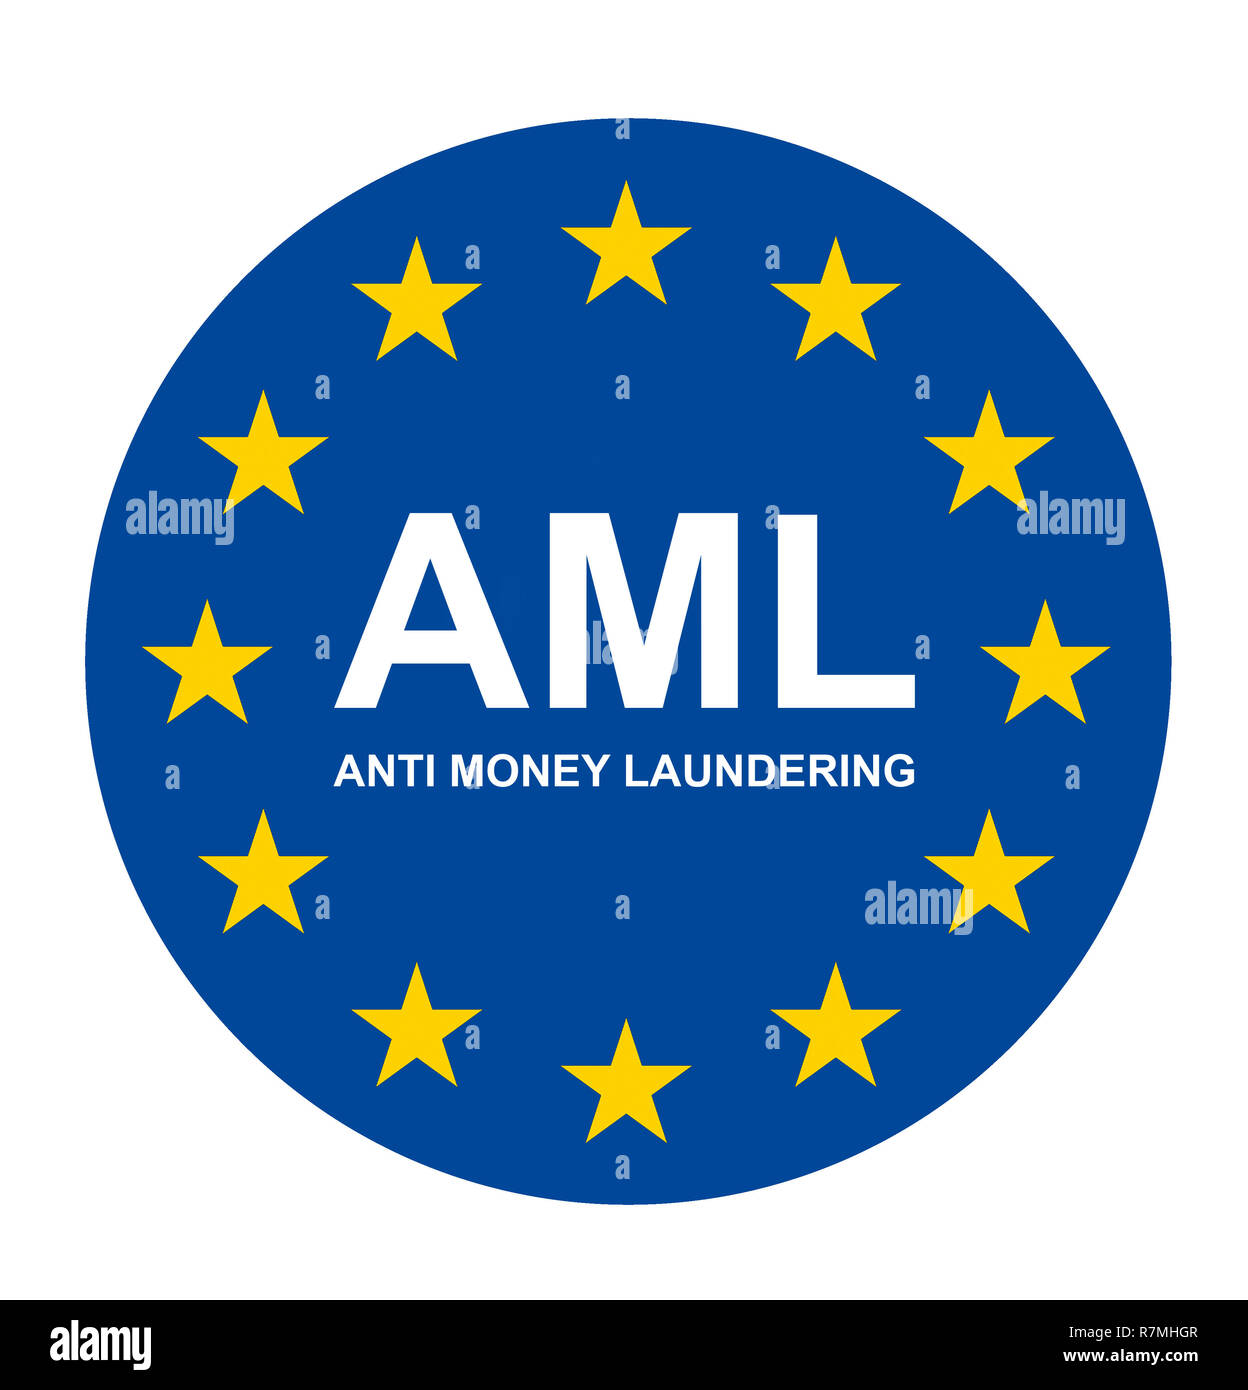 AML anti money laundering concept Stock Photo